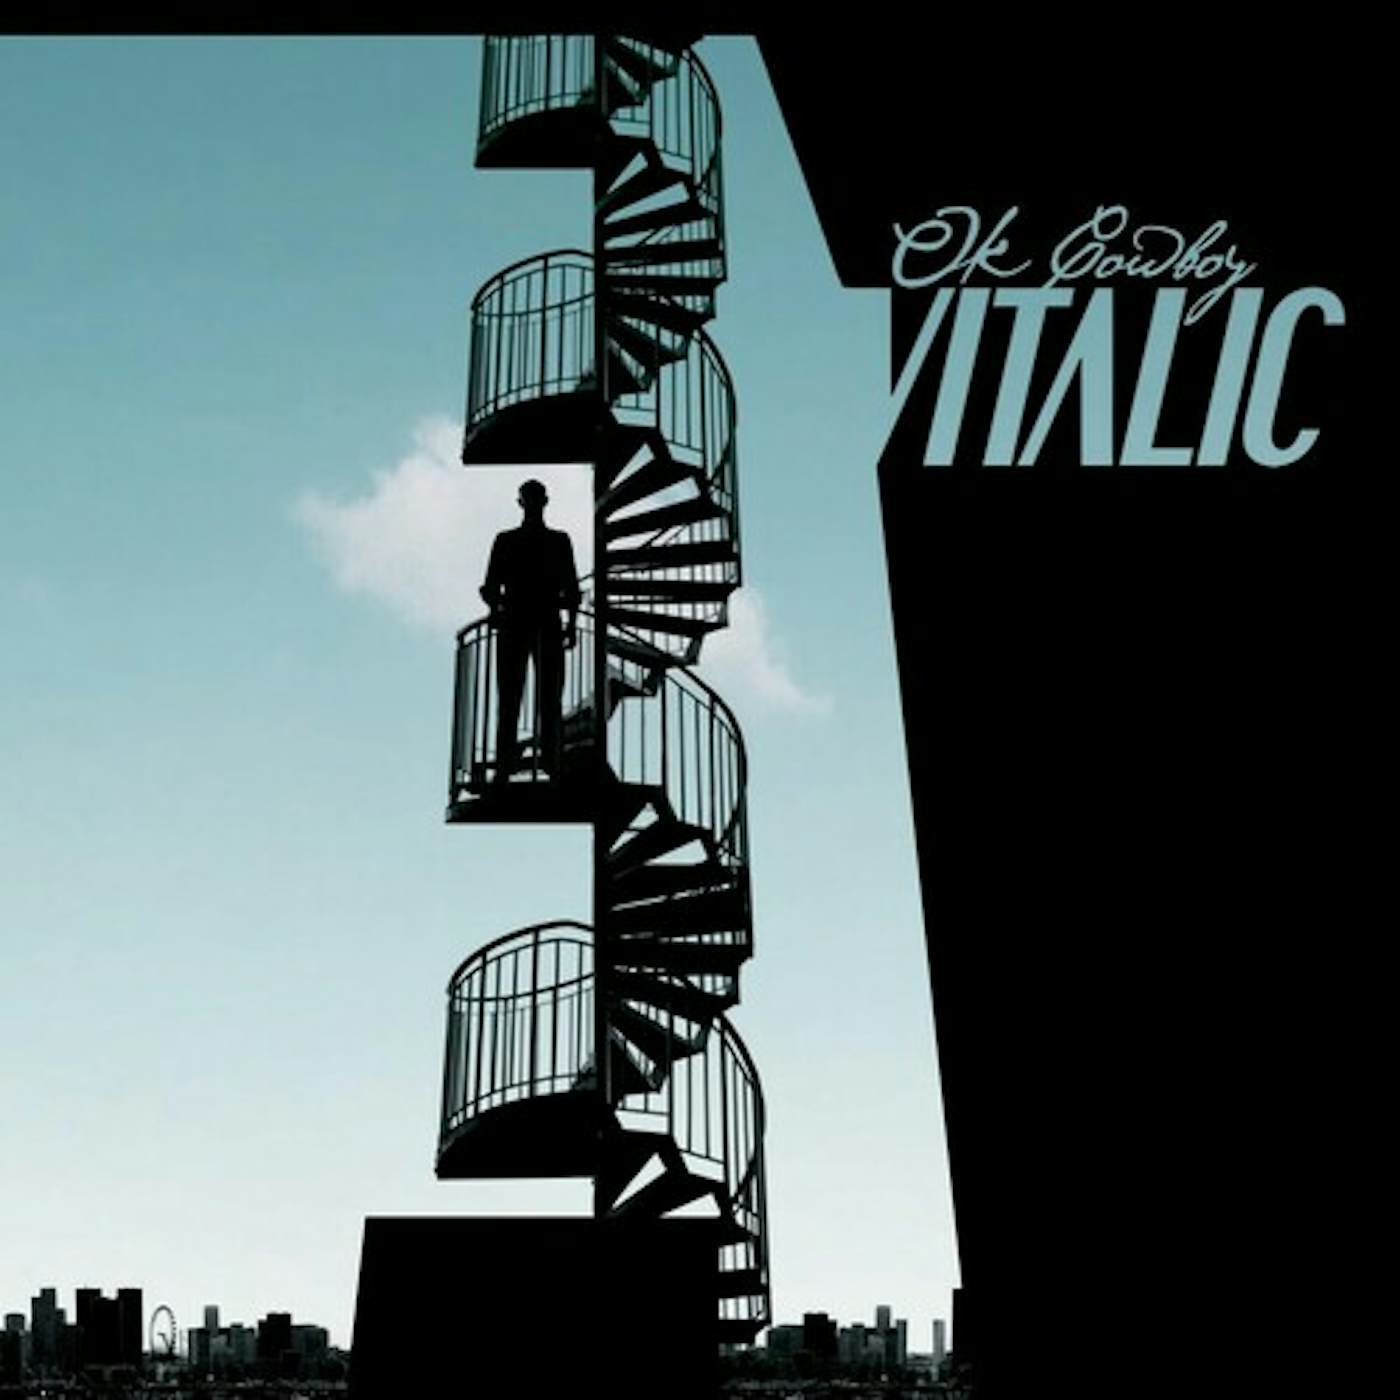 Vitalic OK COWBOY Vinyl Record